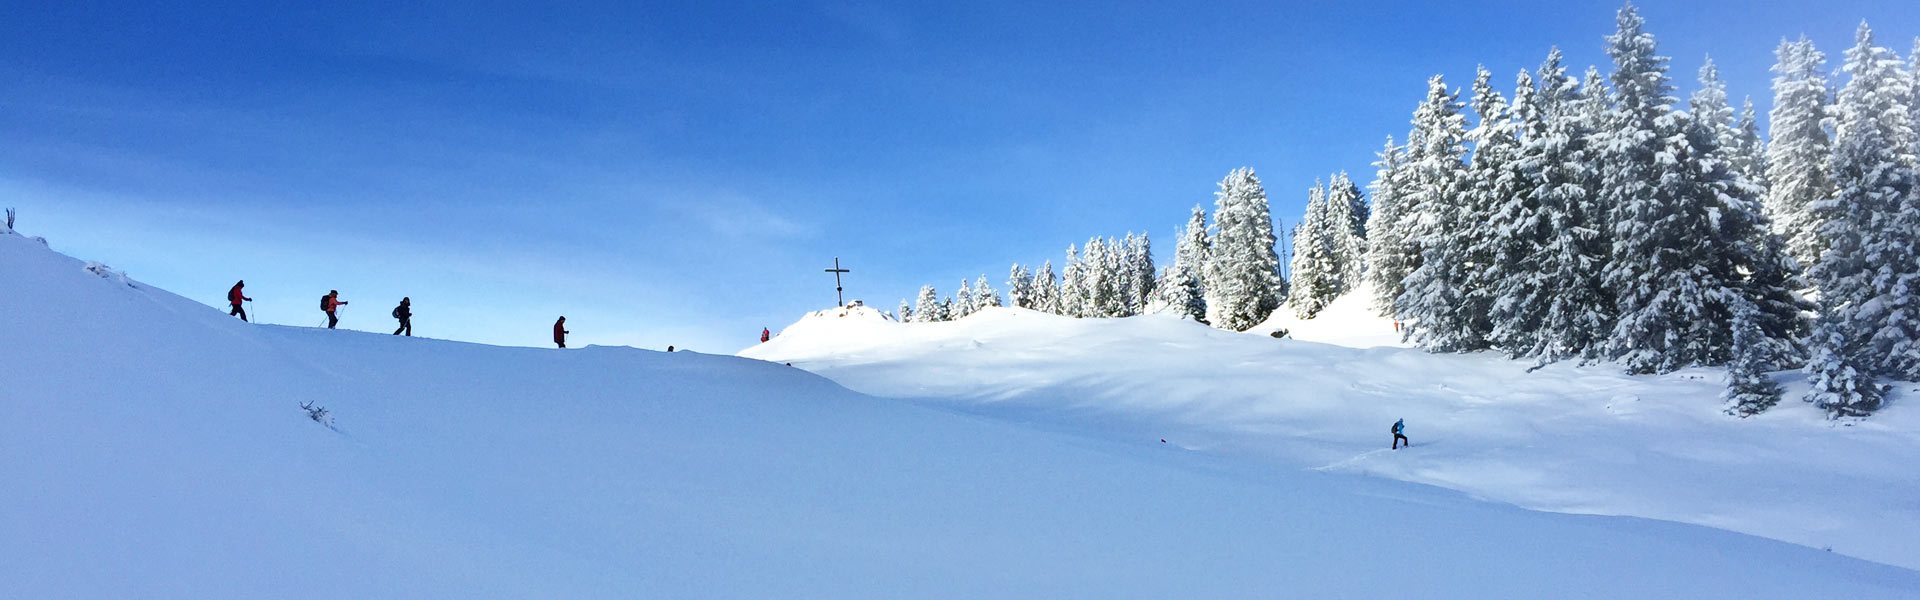 Schneeschuhwandern im Allgäu erfreut sich großer Beliebtheit - Das Bild ist von einem Berg im Allgäu aufgenommen und zeigt Schneeschuhwandern Fans